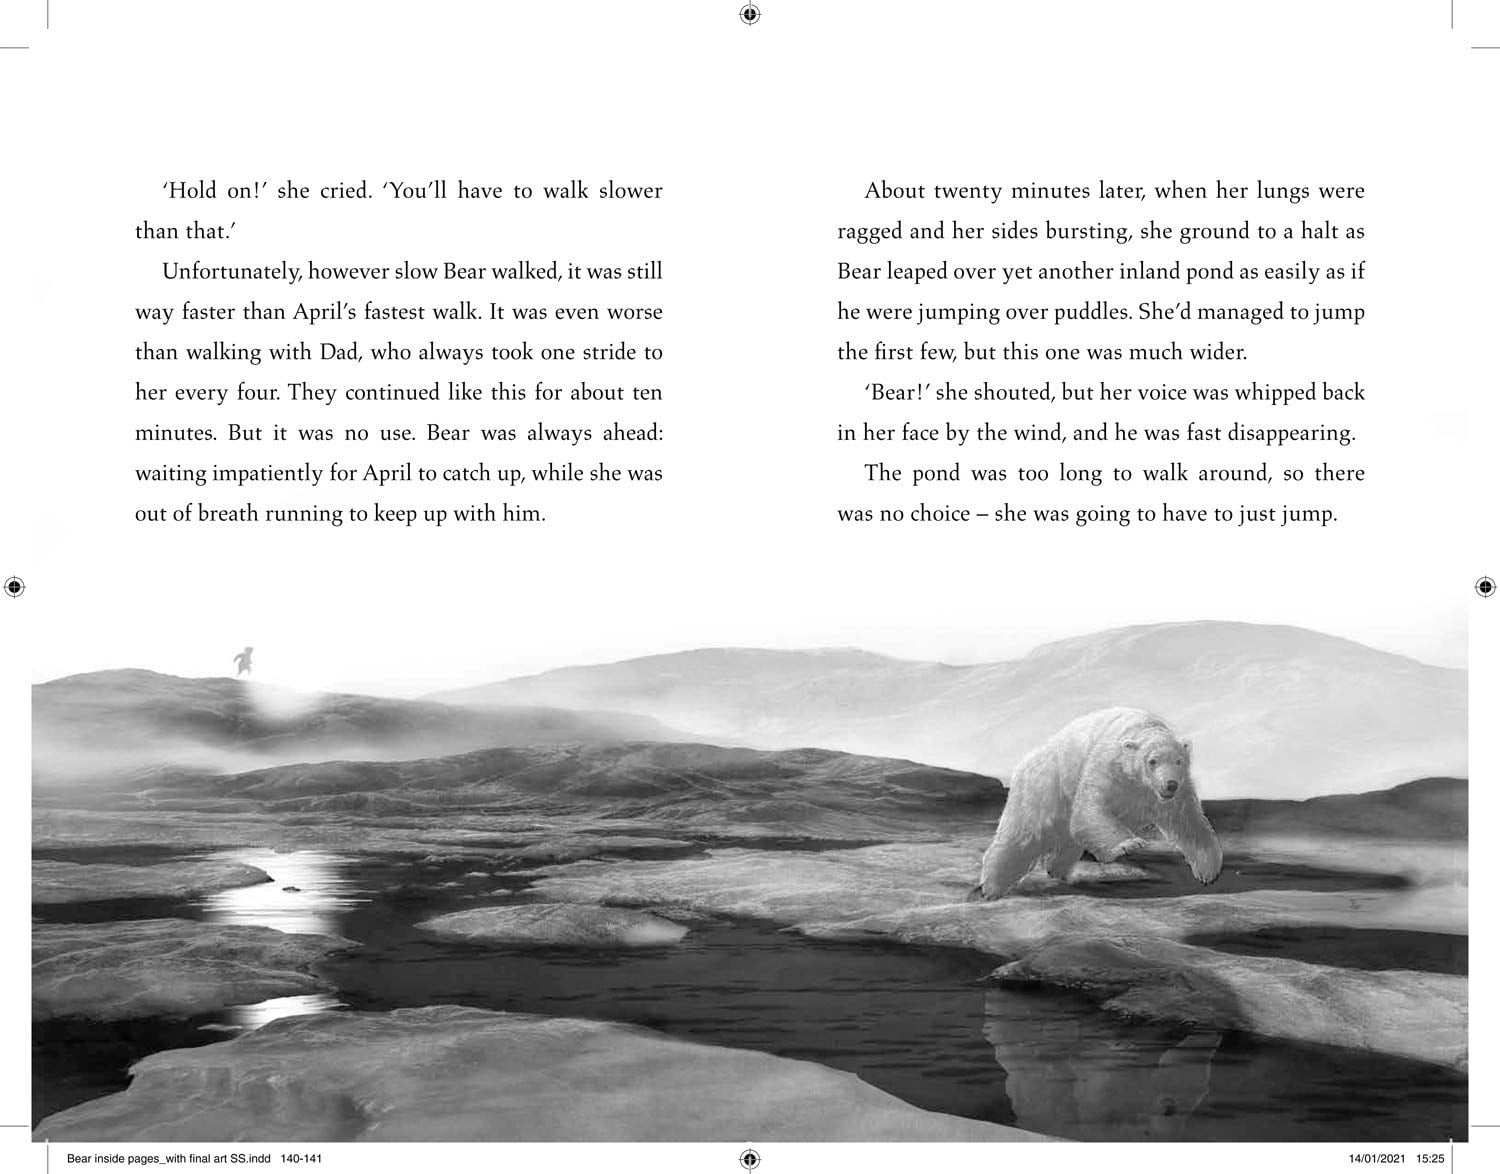 The Last Bear by Hannah Gold